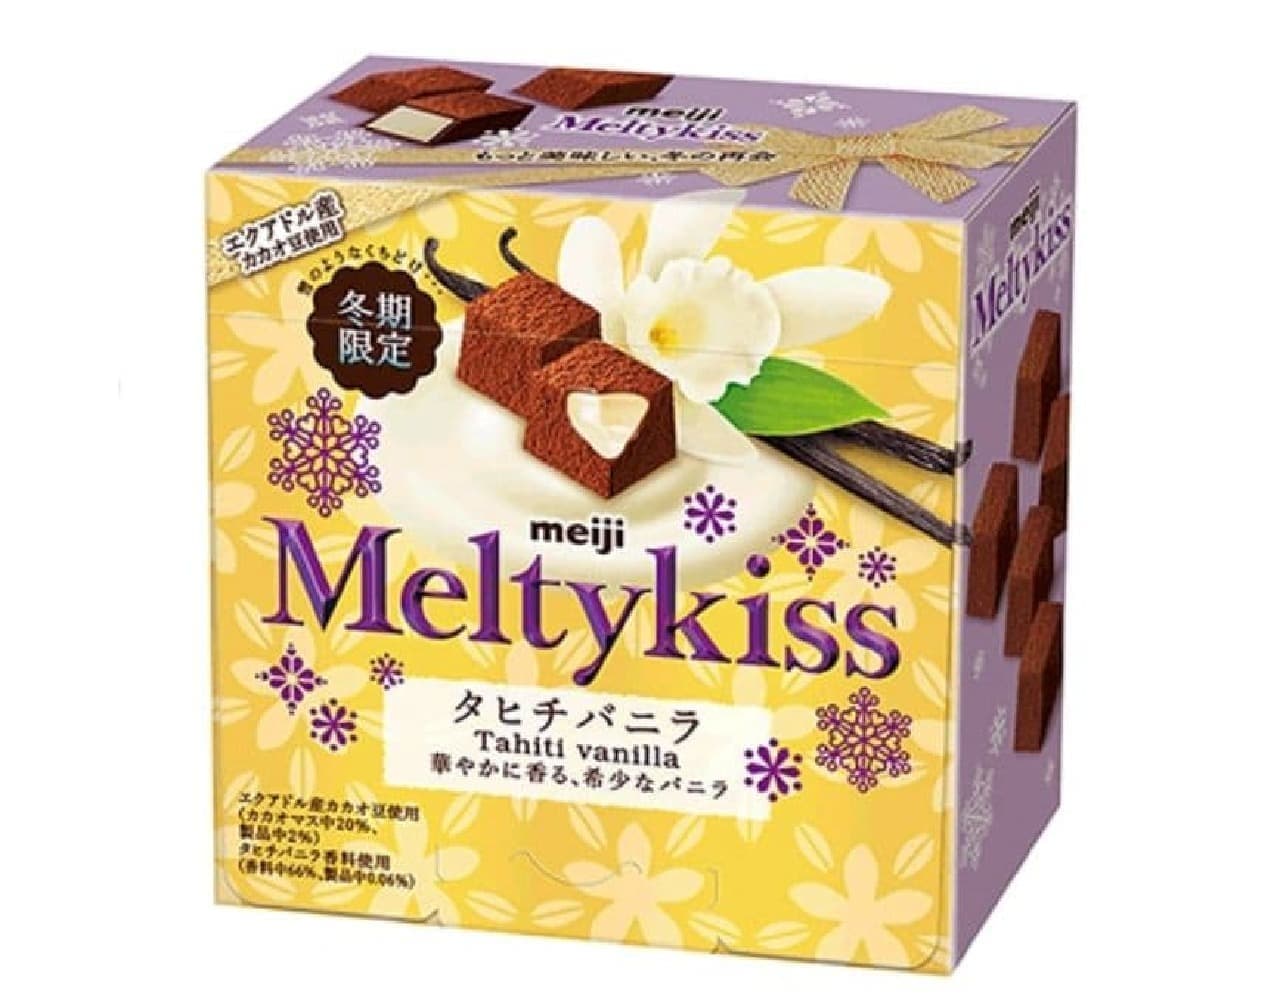 Melty Kiss "Melty Kista Hichi Vanilla"